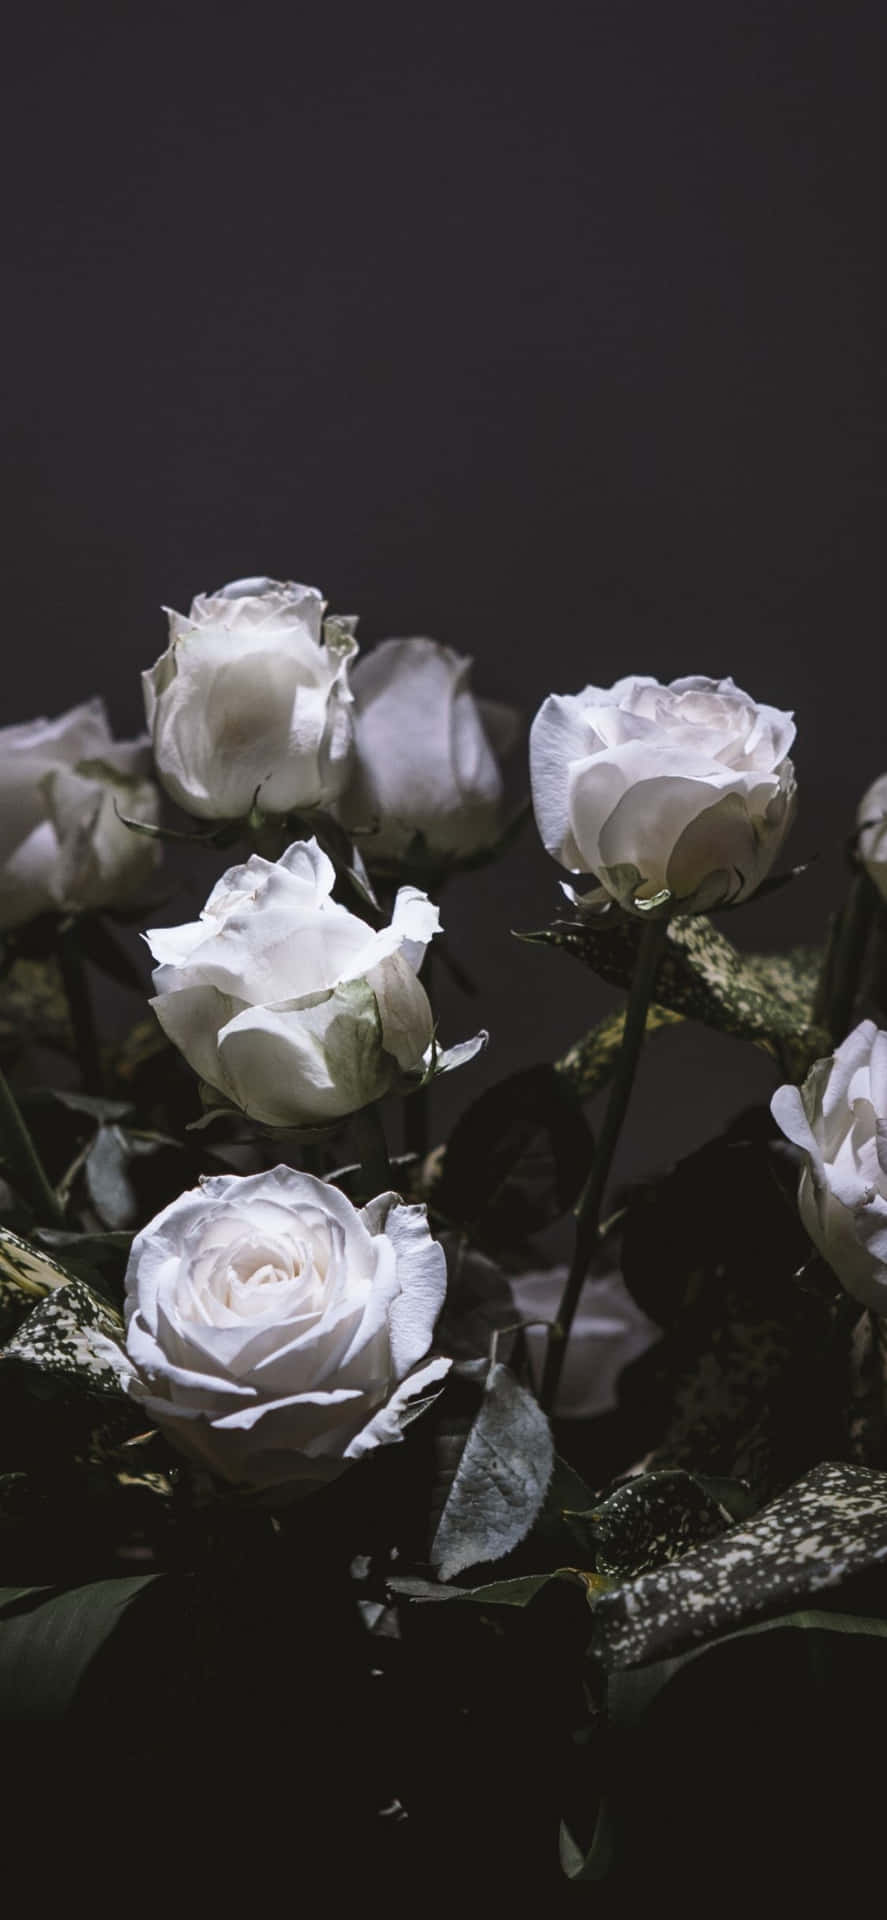  Weiße Rosen Hintergrundbild 887x1920. Weiße Rosen IPhone Wallpaper KOSTENLOS